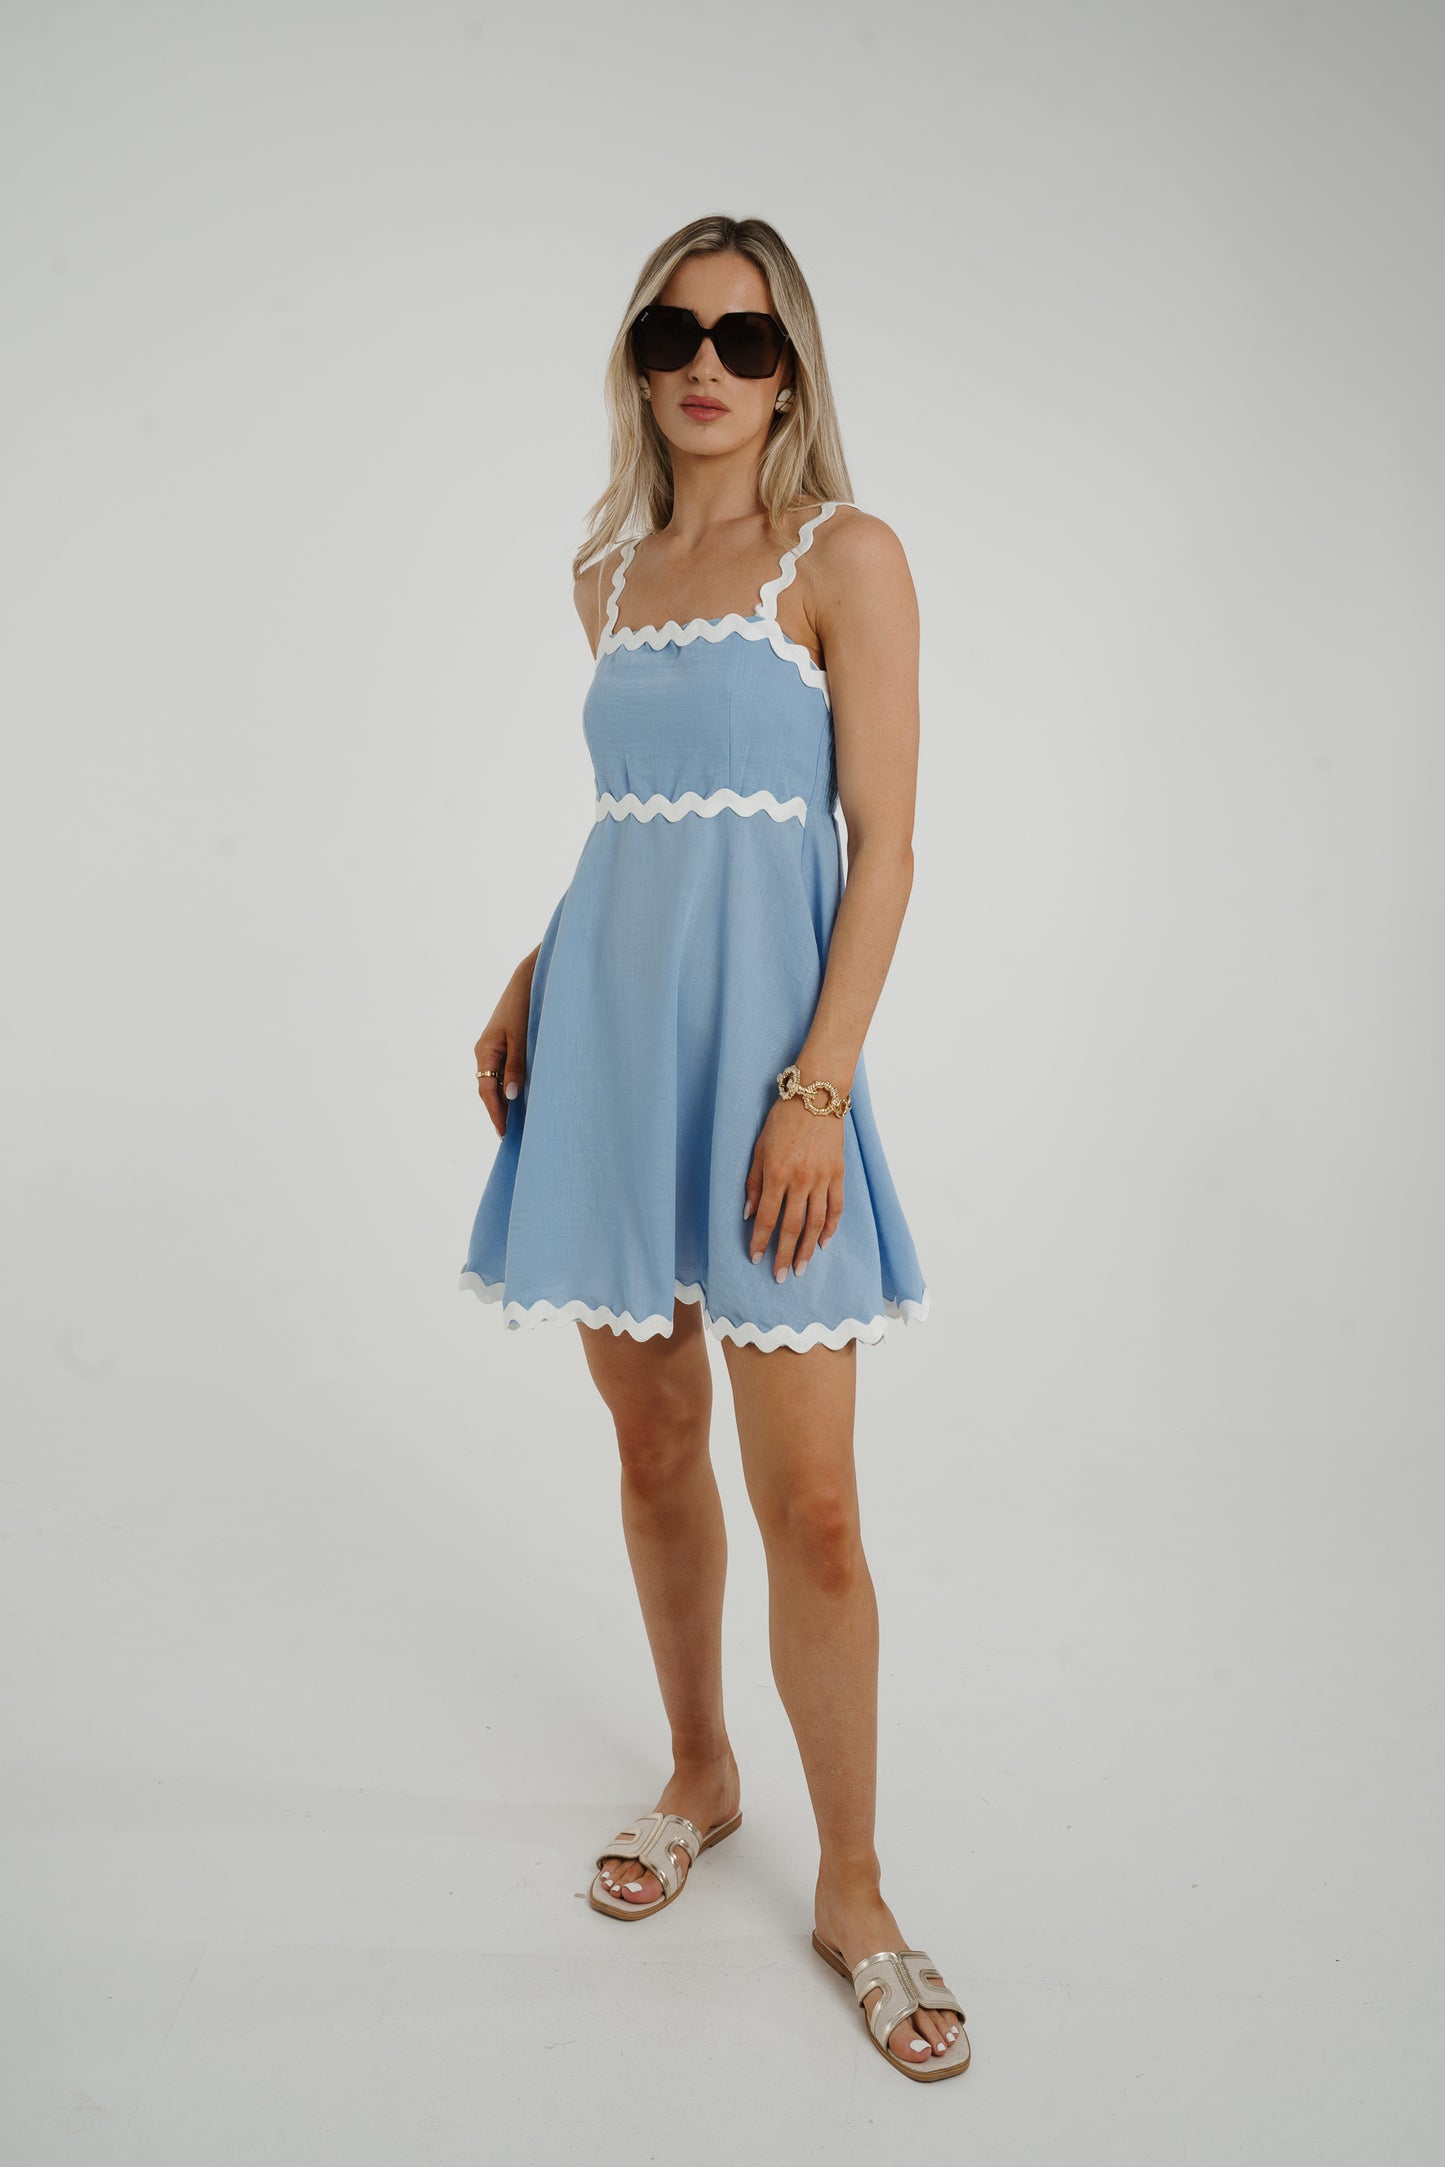 Indie Scallop Trim Mini Dress In Blue